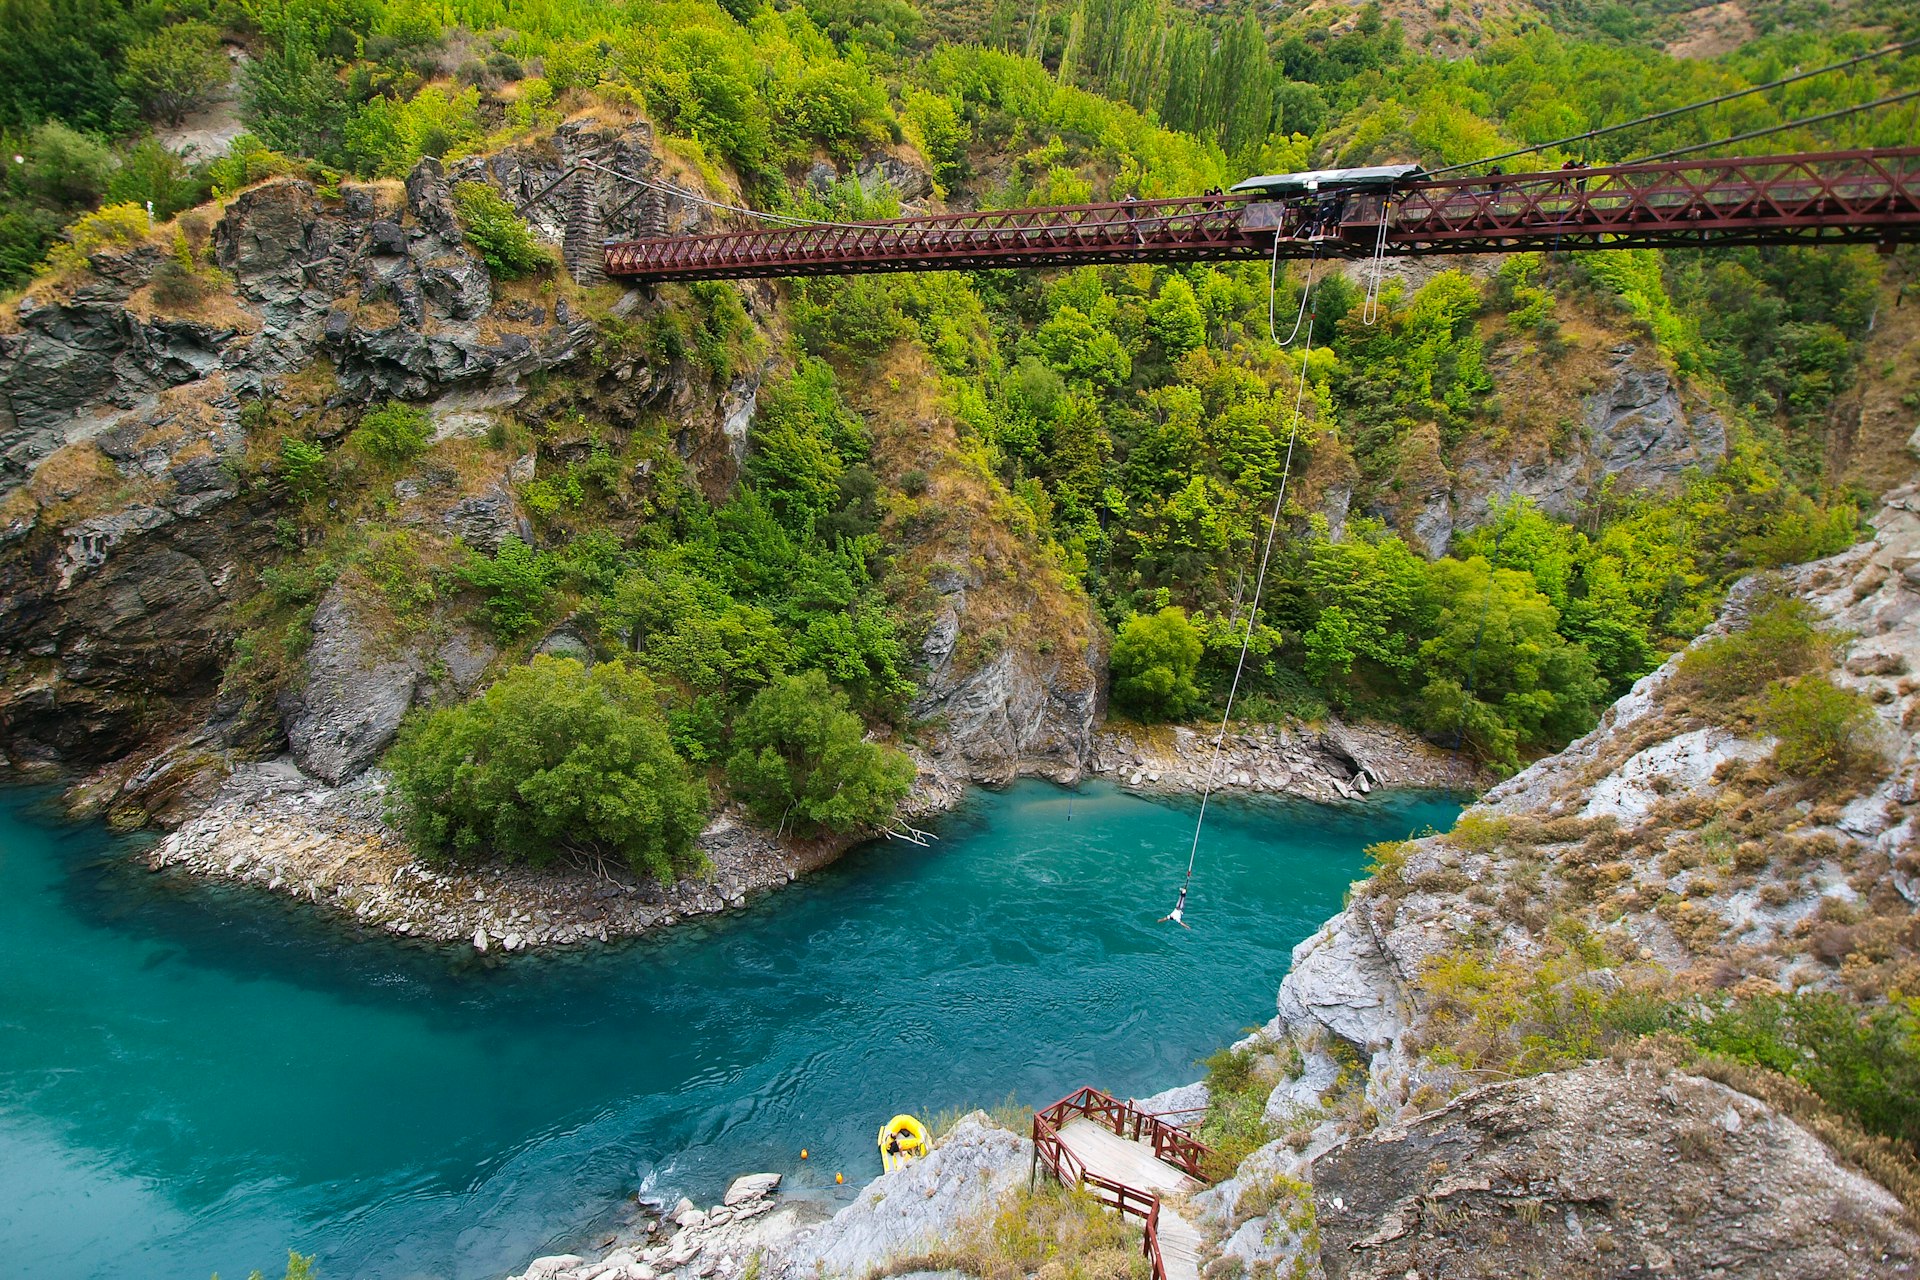 Bungy jumper plunges off a bridge towards an alpine river that flows below